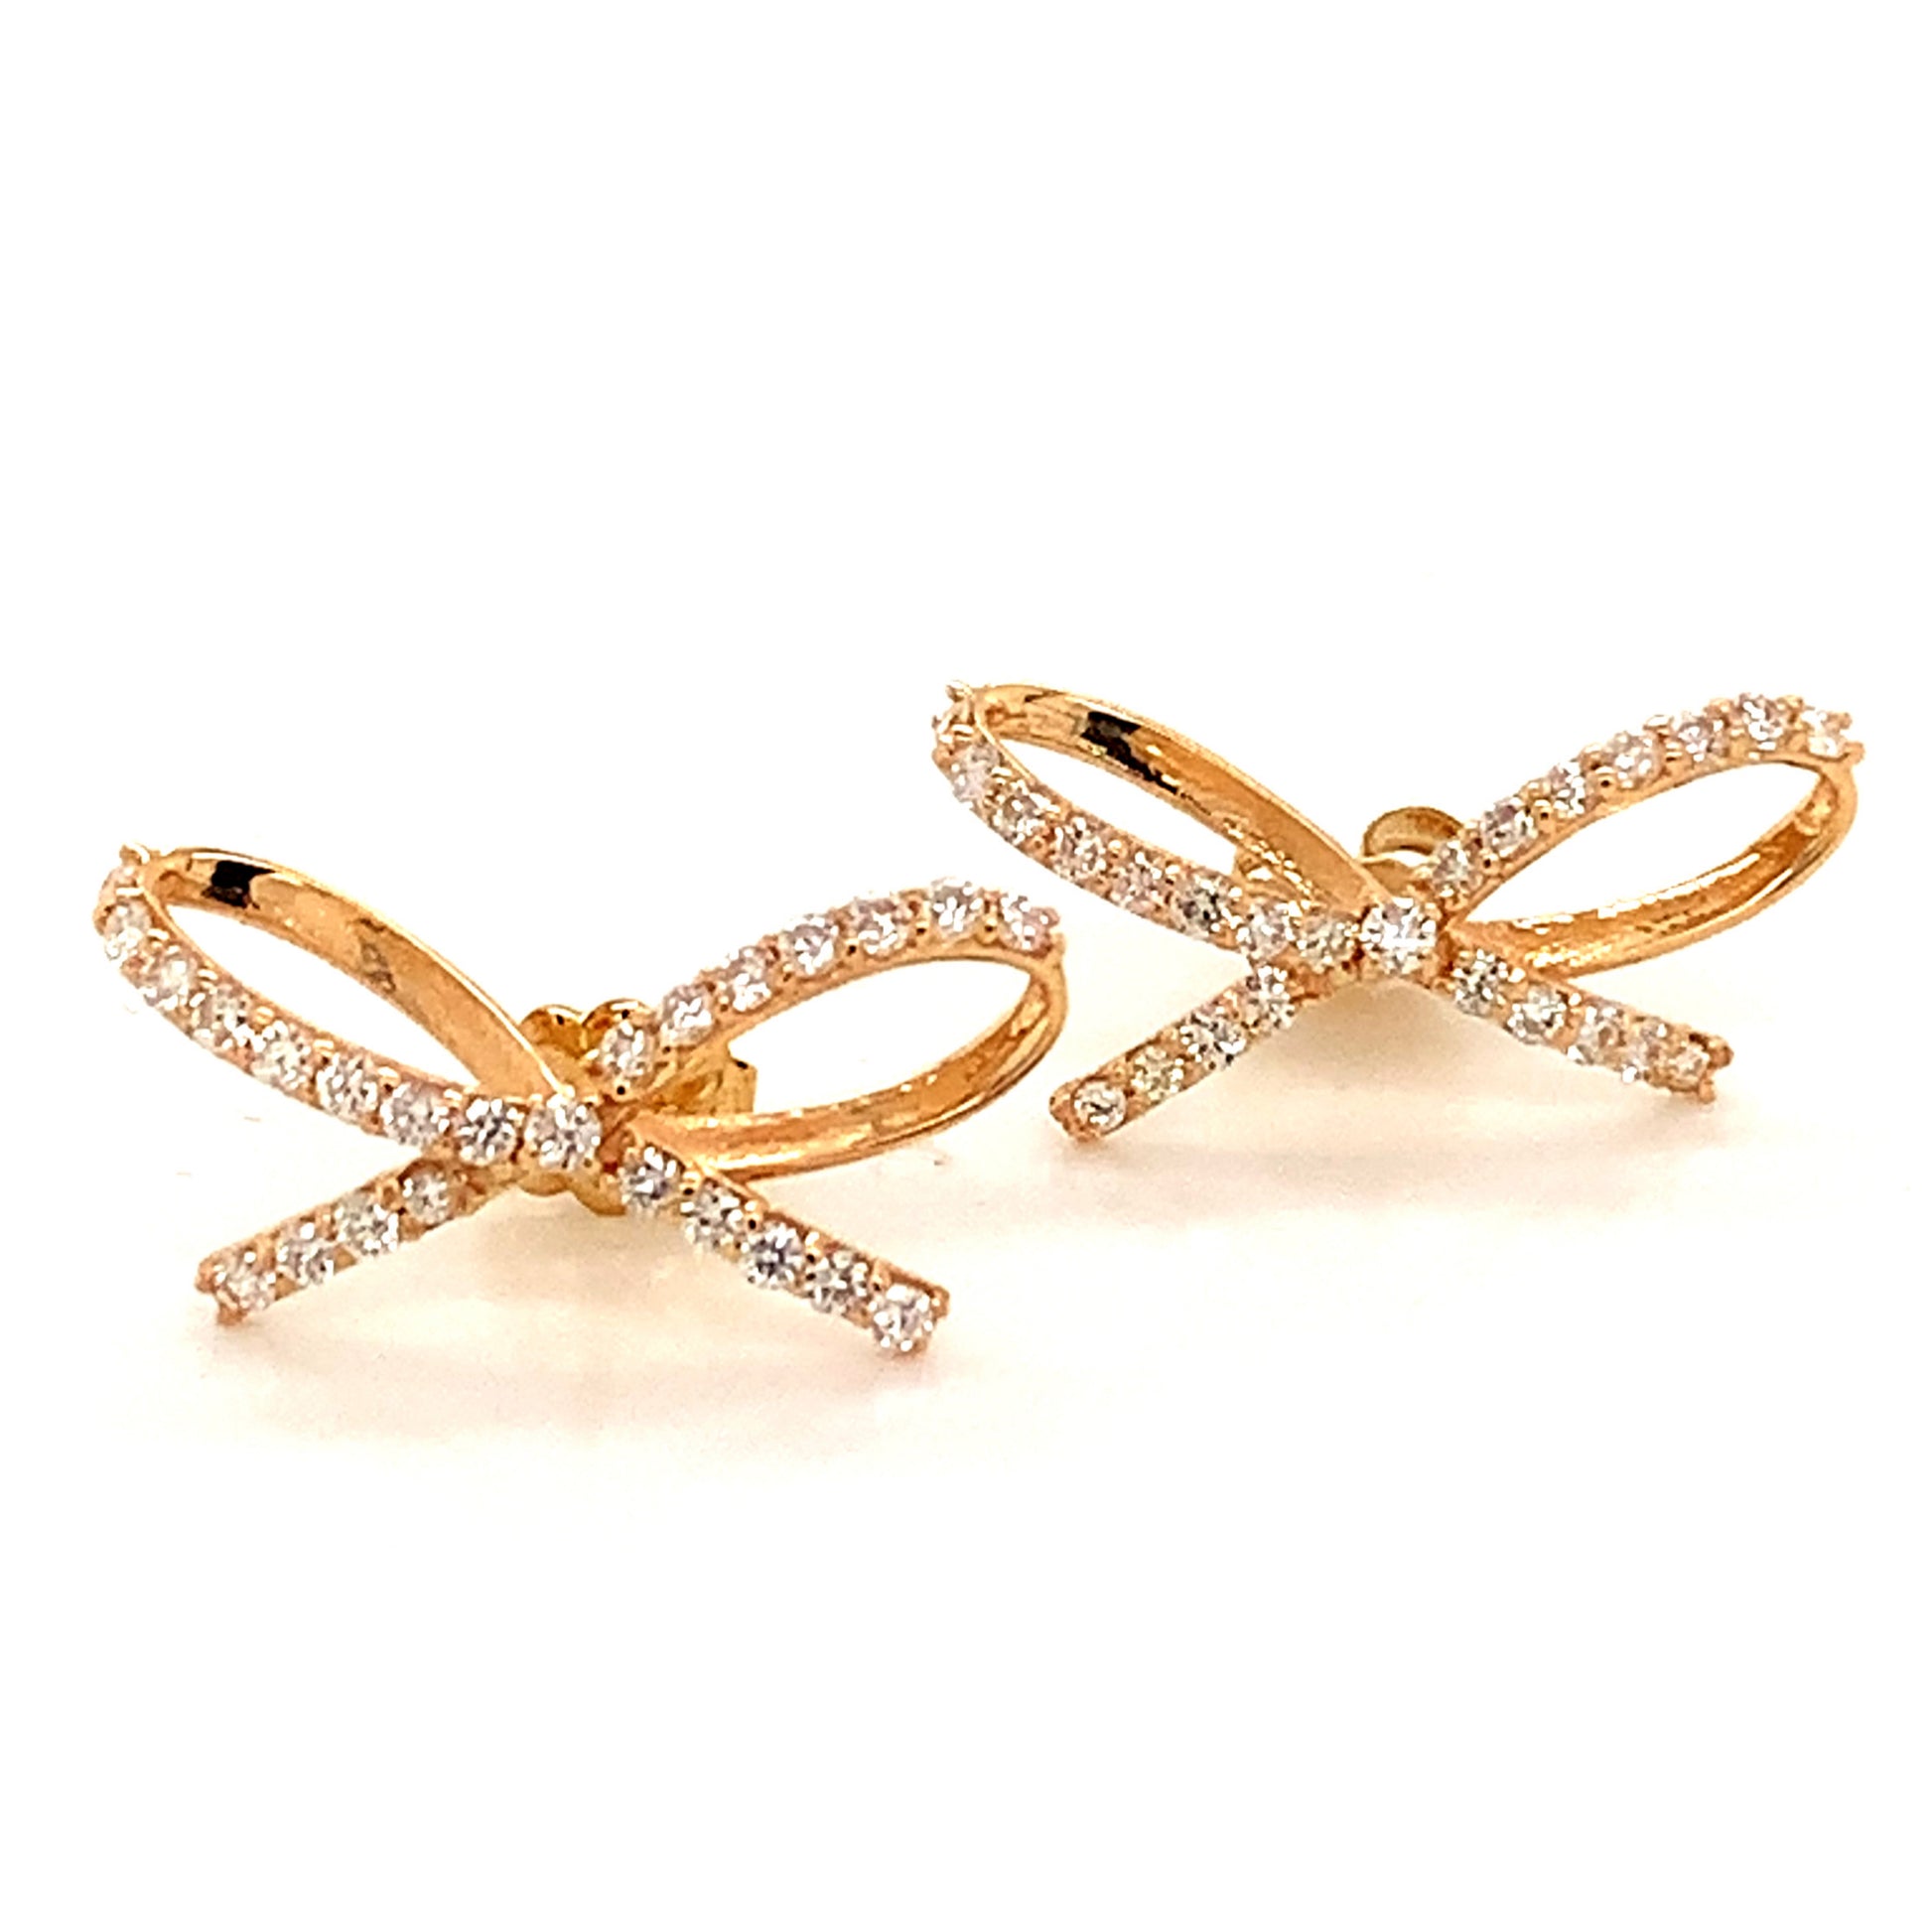 Diamond Bow Stud Earrings 14k Gold 0.5 TCW Certified $3,950 111897 - Certified Estate Jewelry